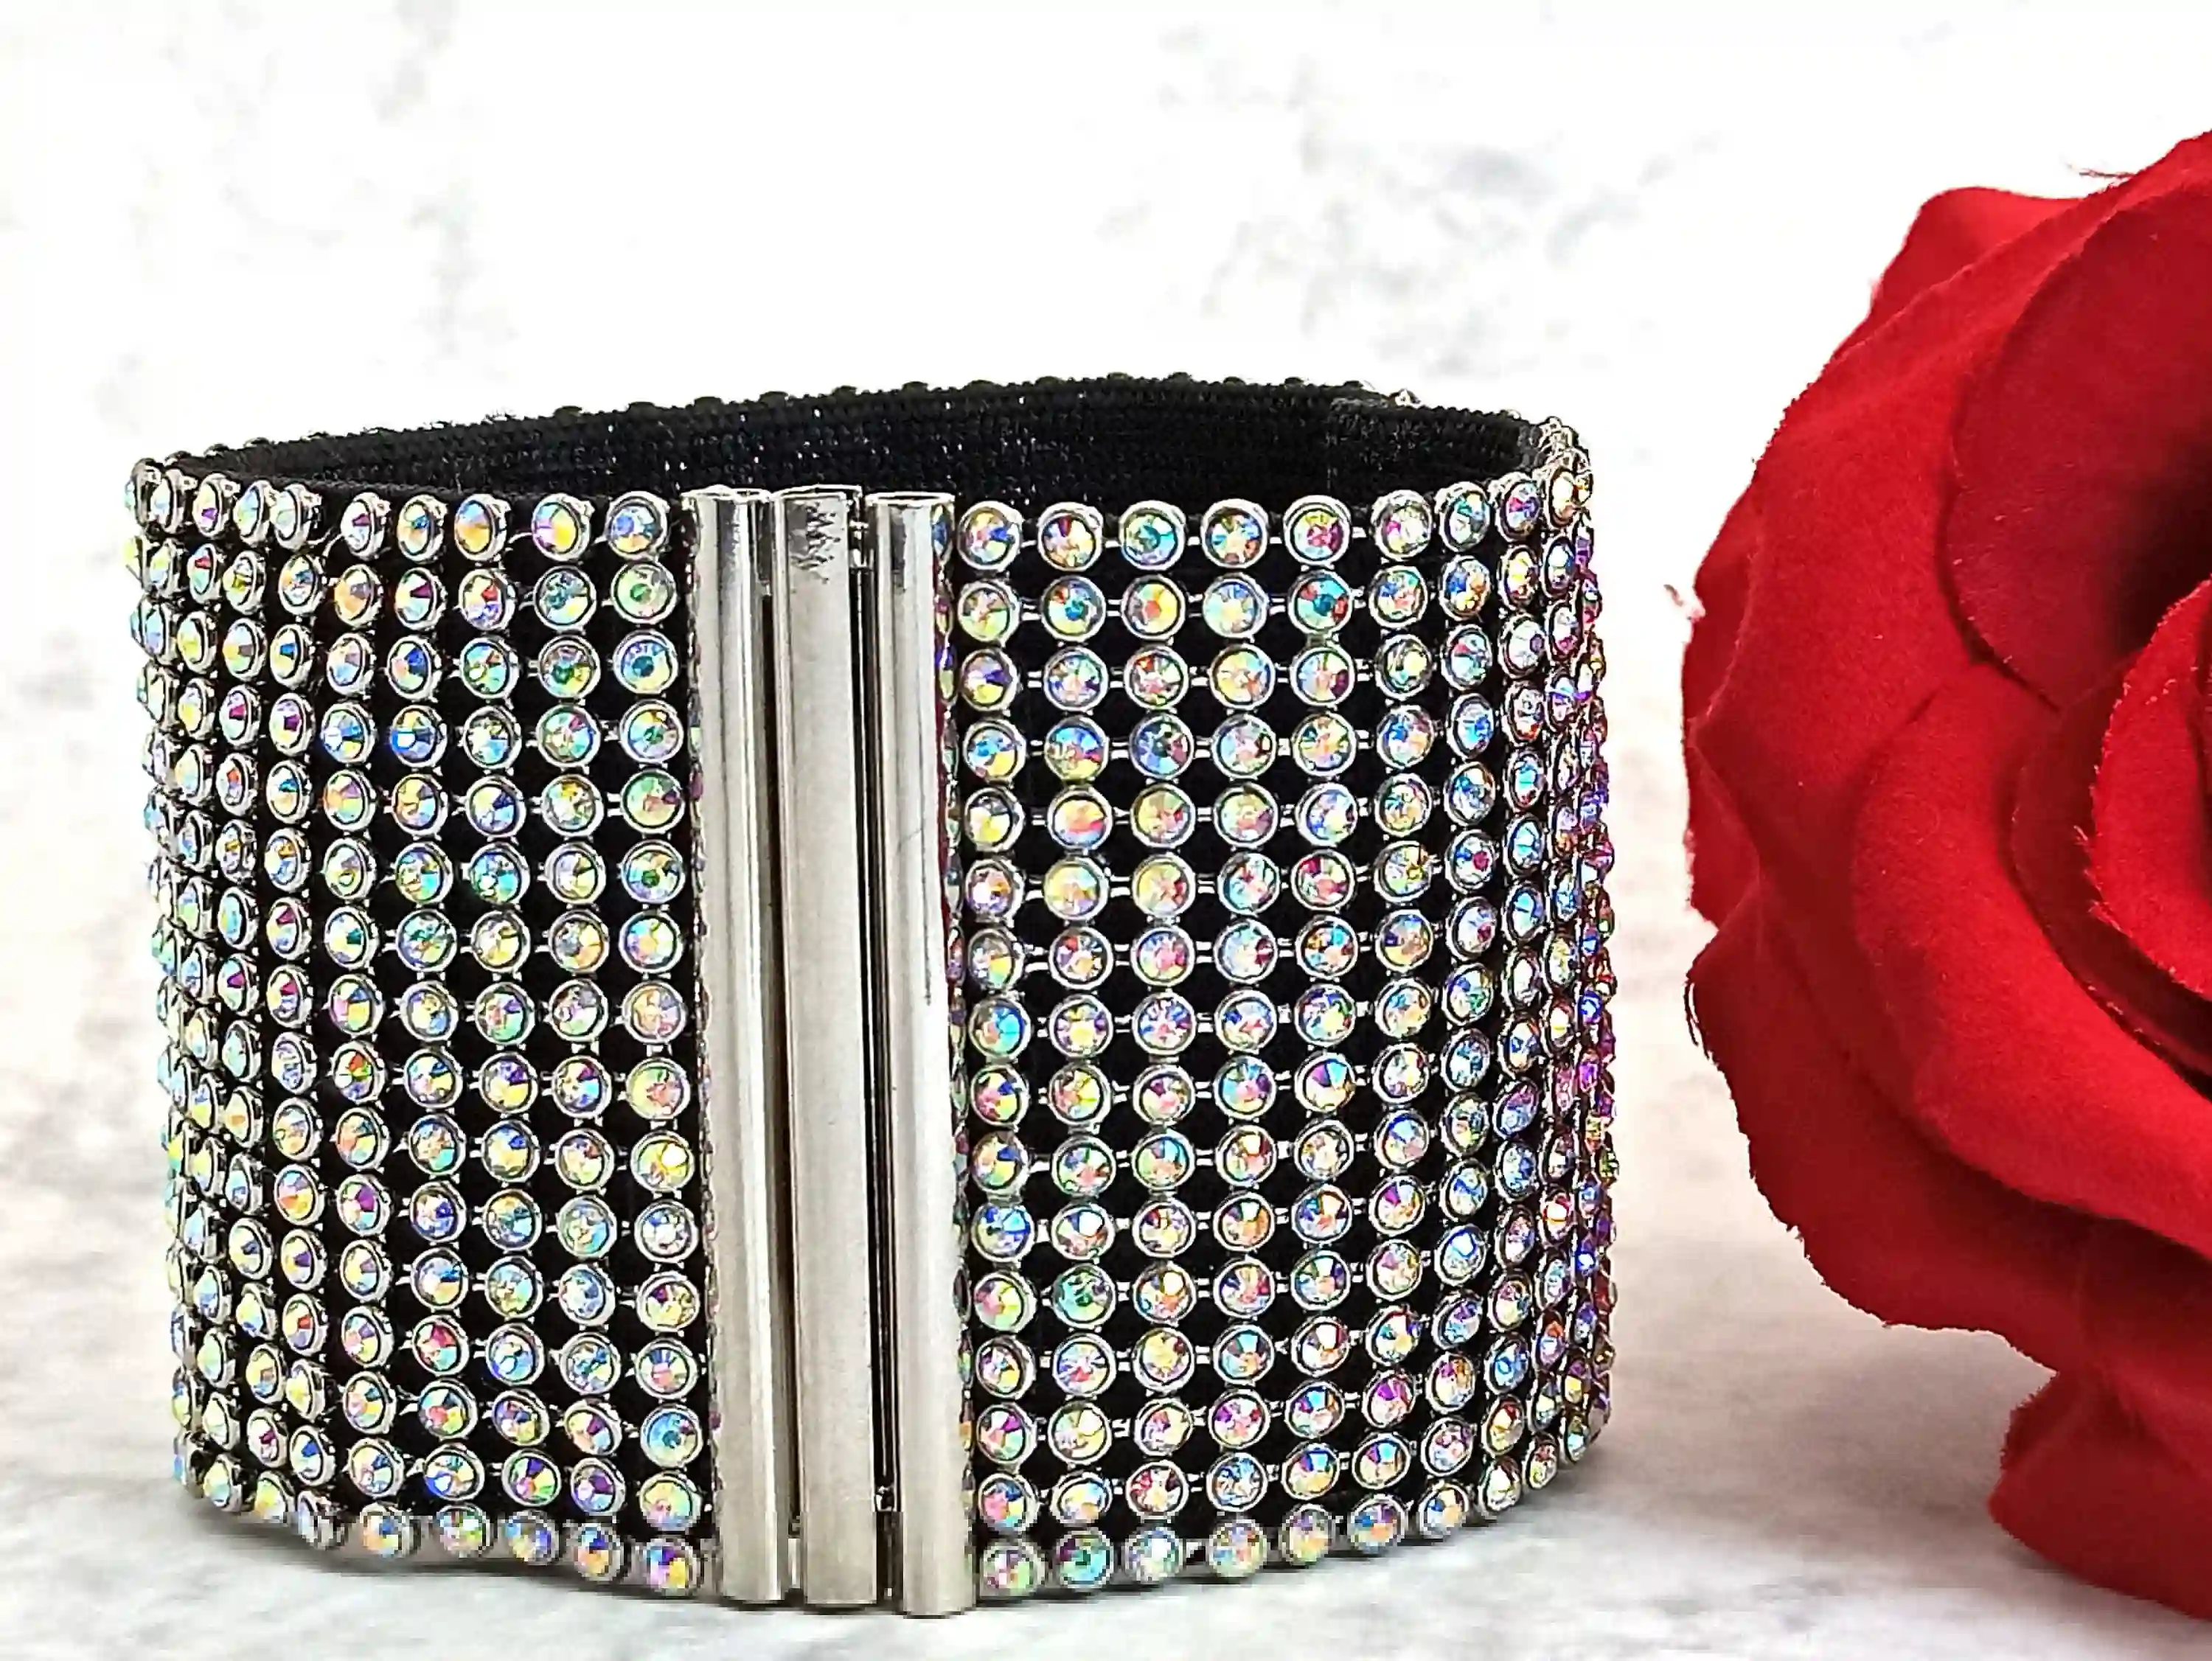 Swarovski Crystal Bracelet Wedding/Wide Cuff Bracelet / Luxury Crystal Bridal Bracelet Cuff Bridesmaid Jewelry Gift - HANDMADE Jewelry bride 